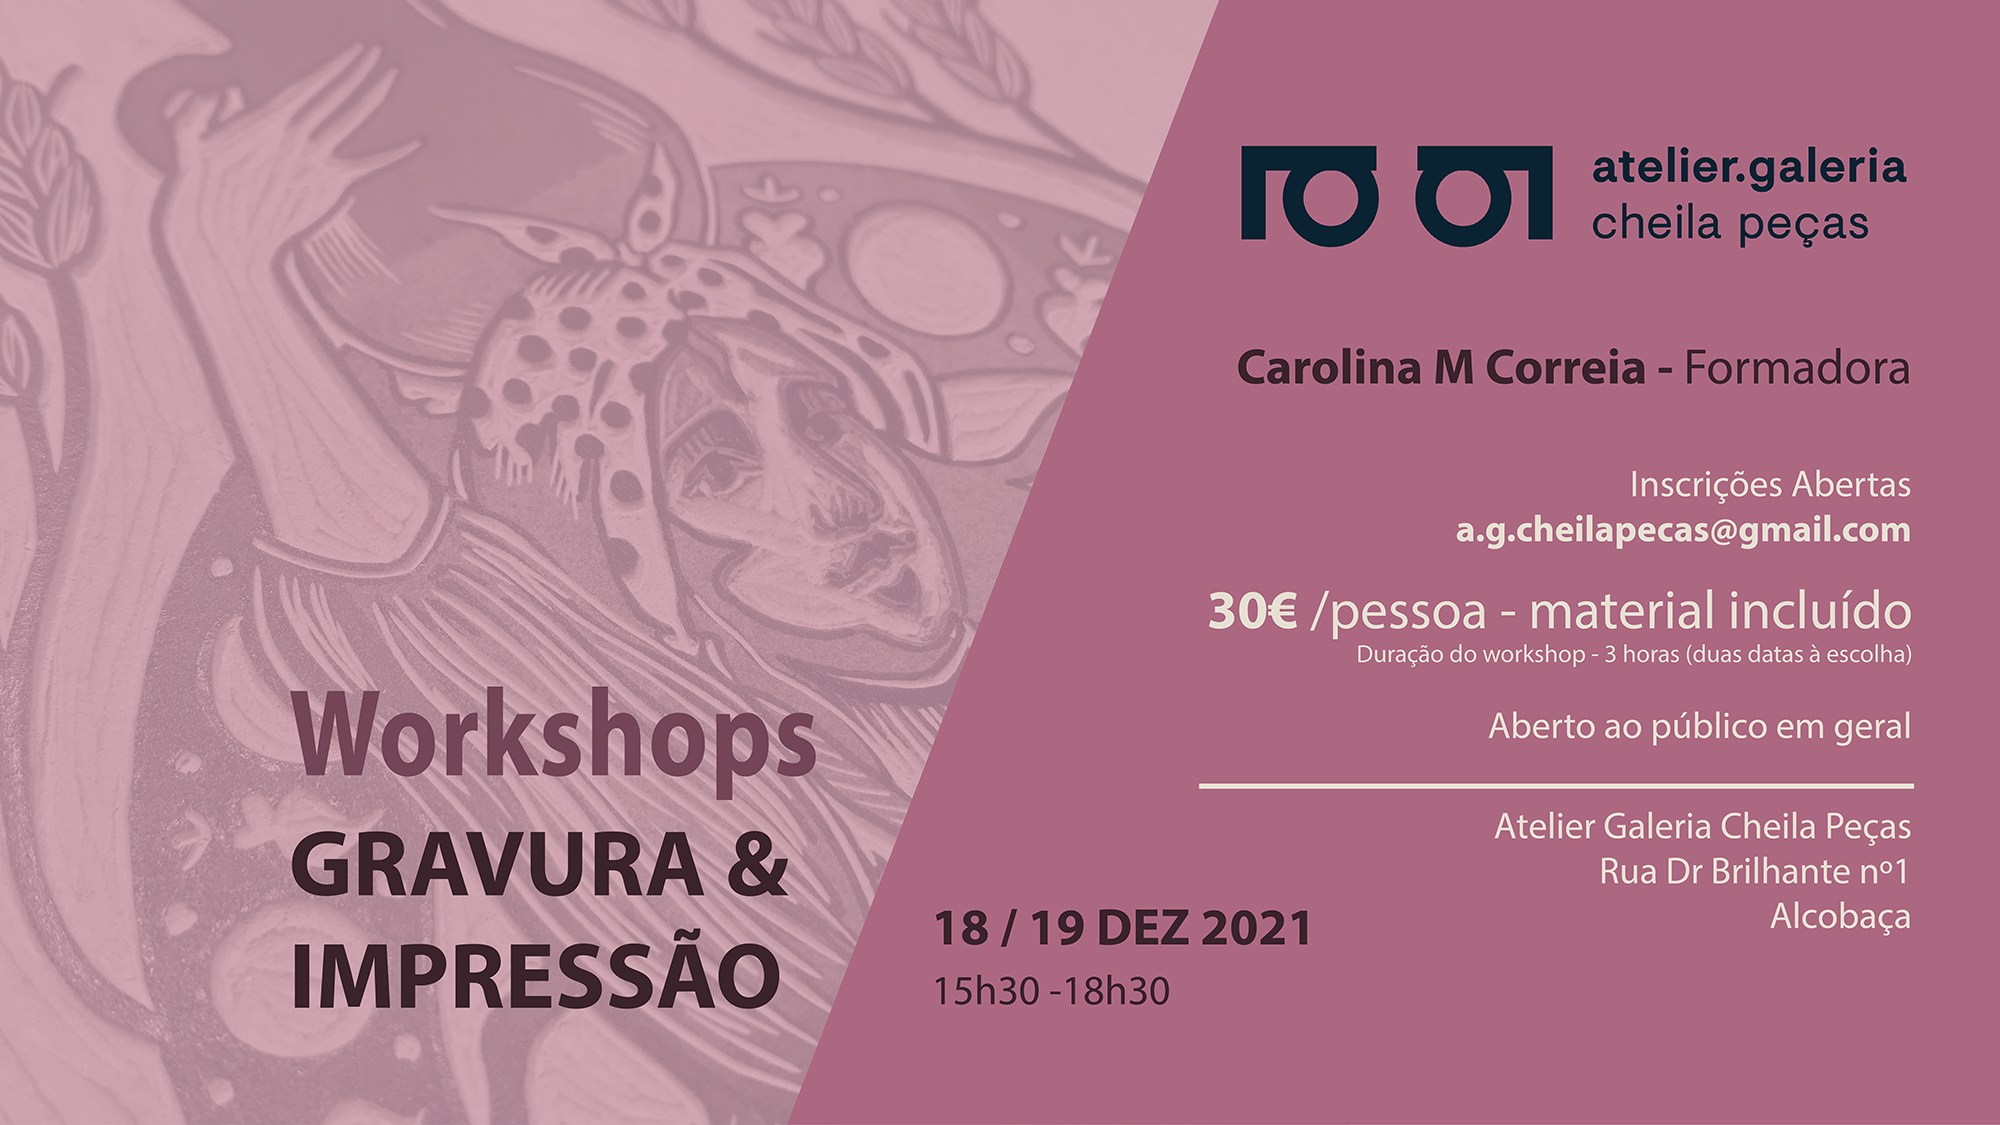 Workshops de Gravura & Impressão por Carolina M Correia